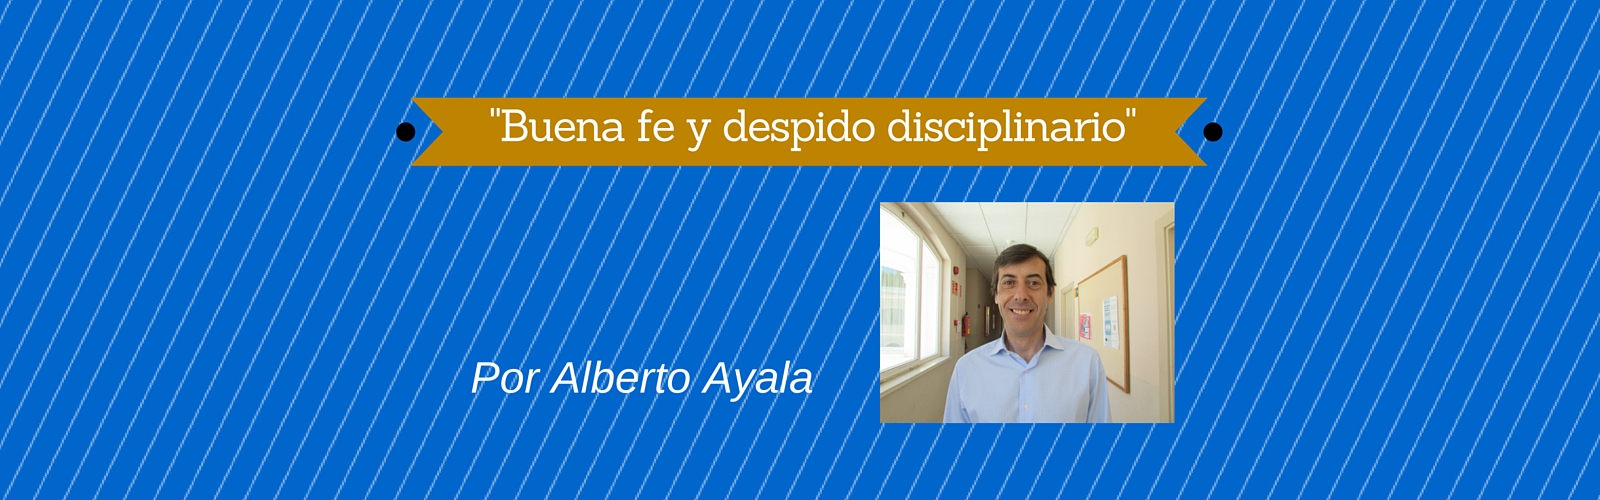 "Buena fe y despido disciplinario". Por Alberto Ayala